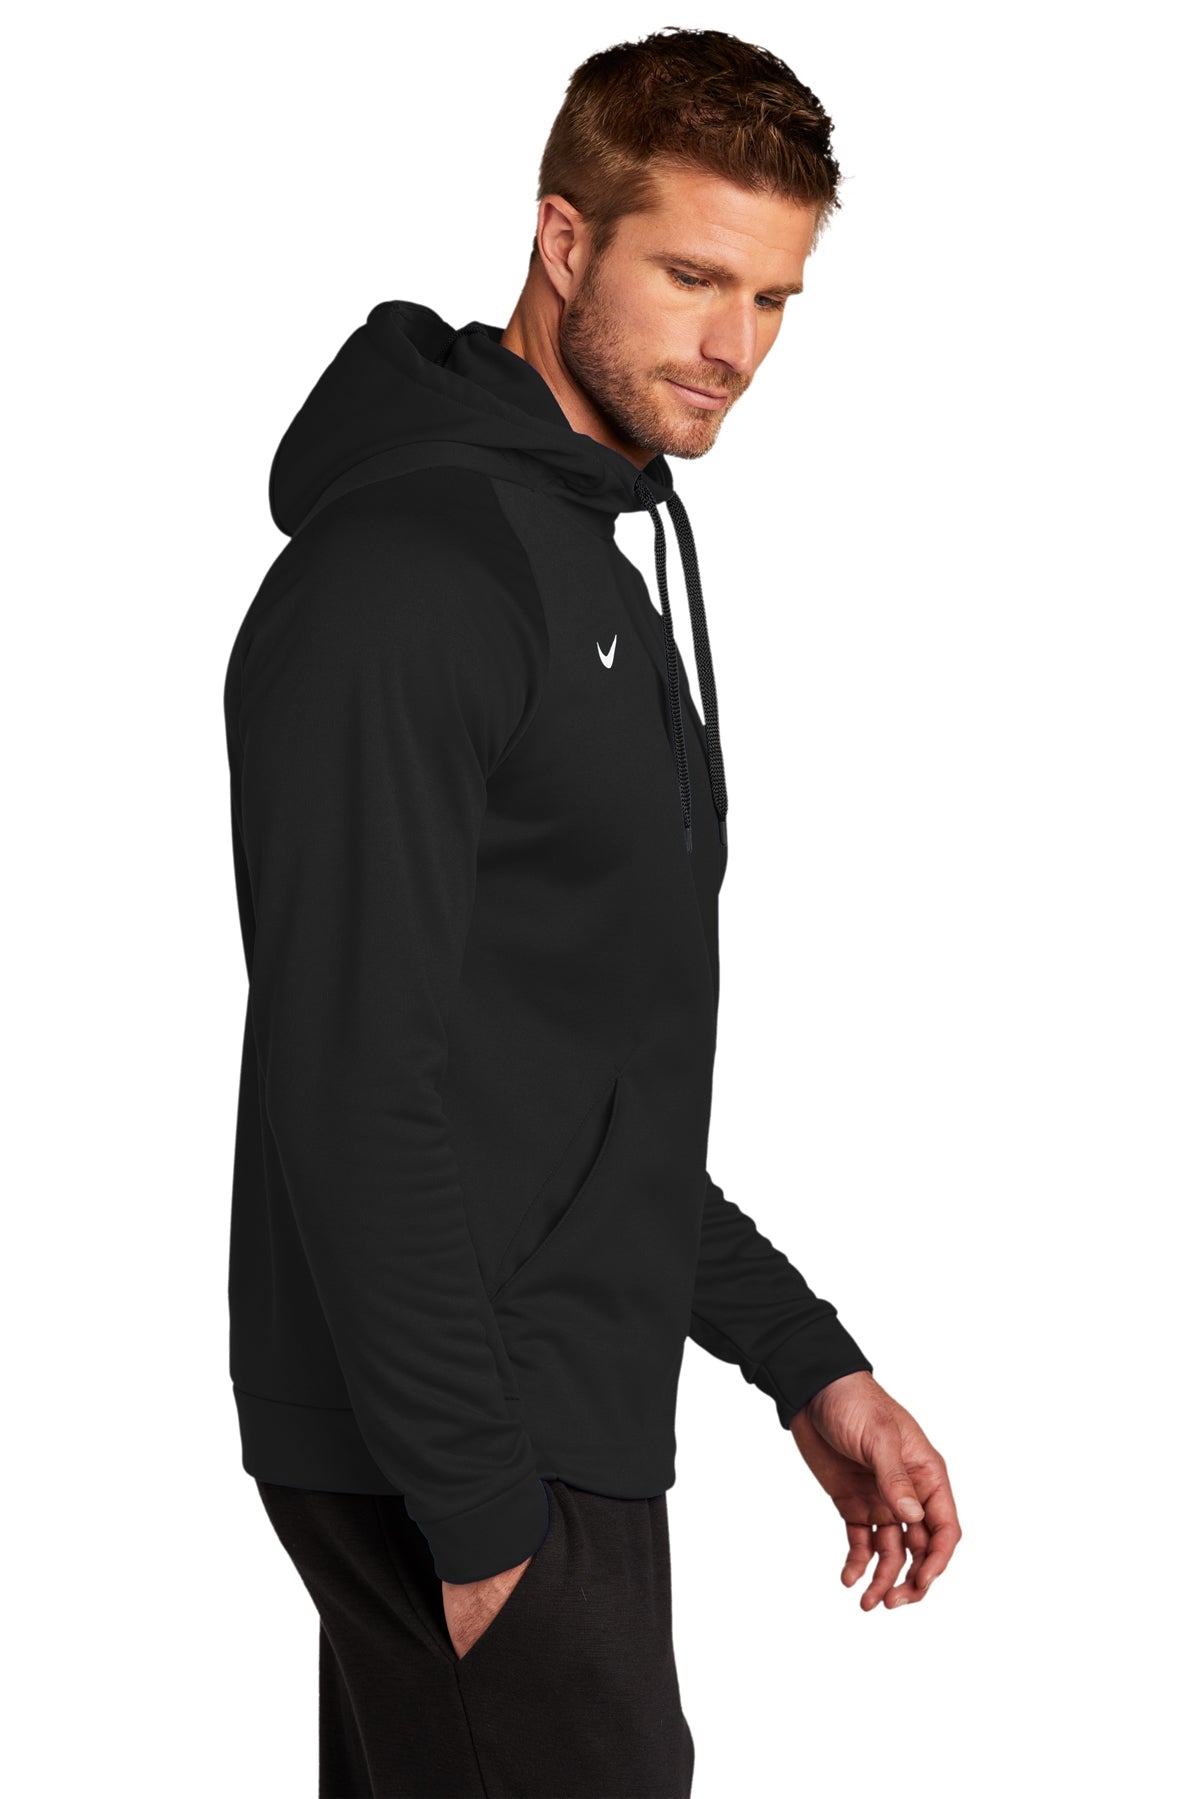 Nike Therma-FIT Pullover Fleece Hoodie Team Black